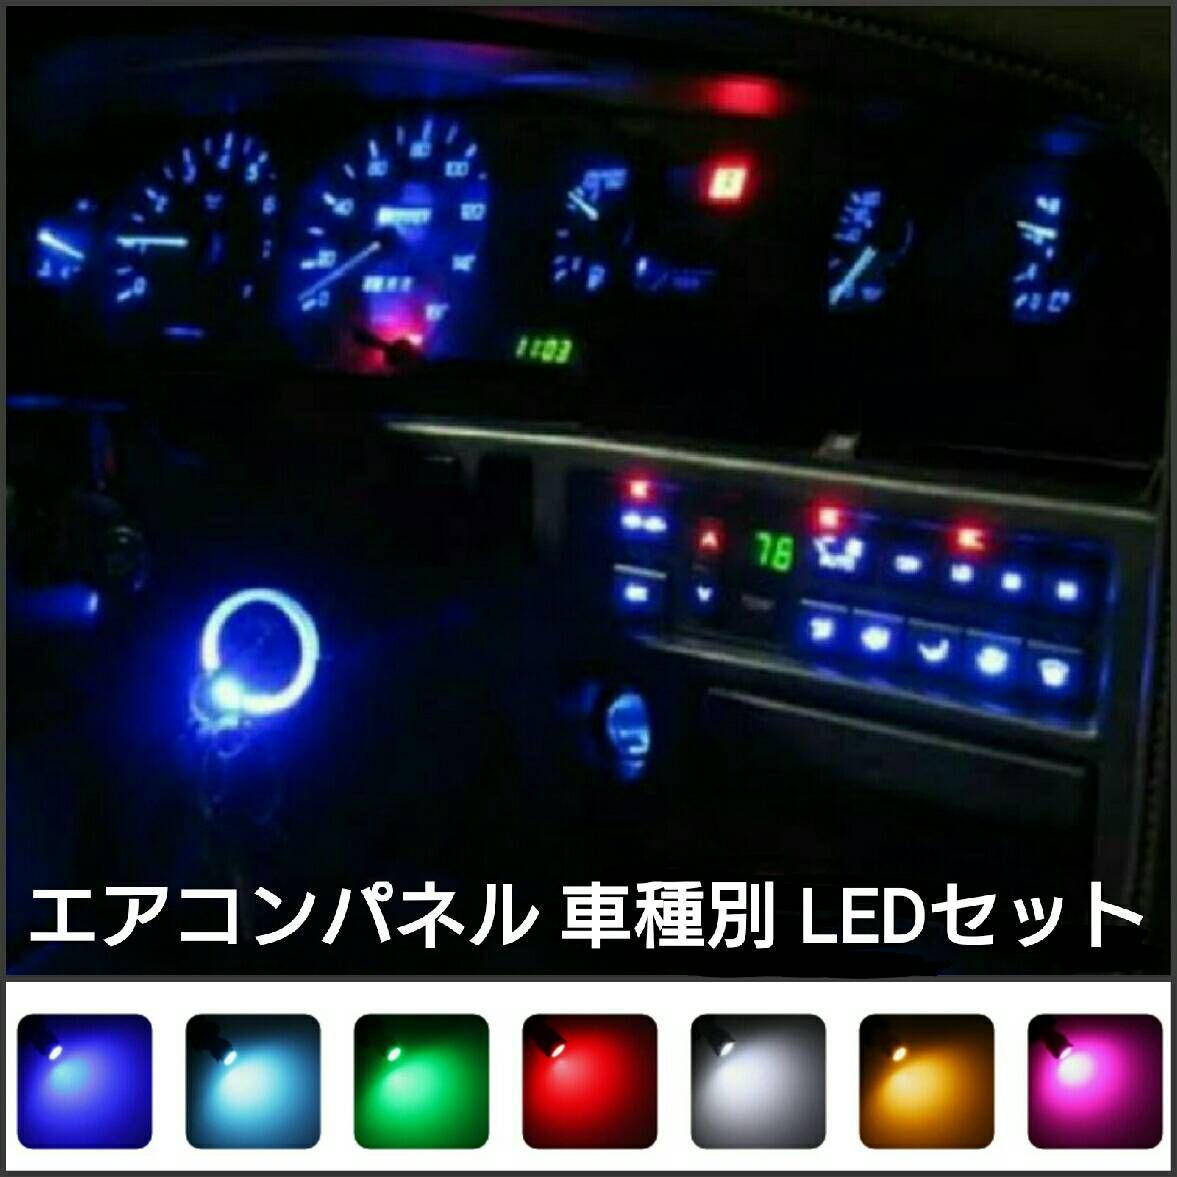 トヨタ サクシードバン・プロボックス NCP165V LED マニュアルエアコンパネルセット - メルカリ